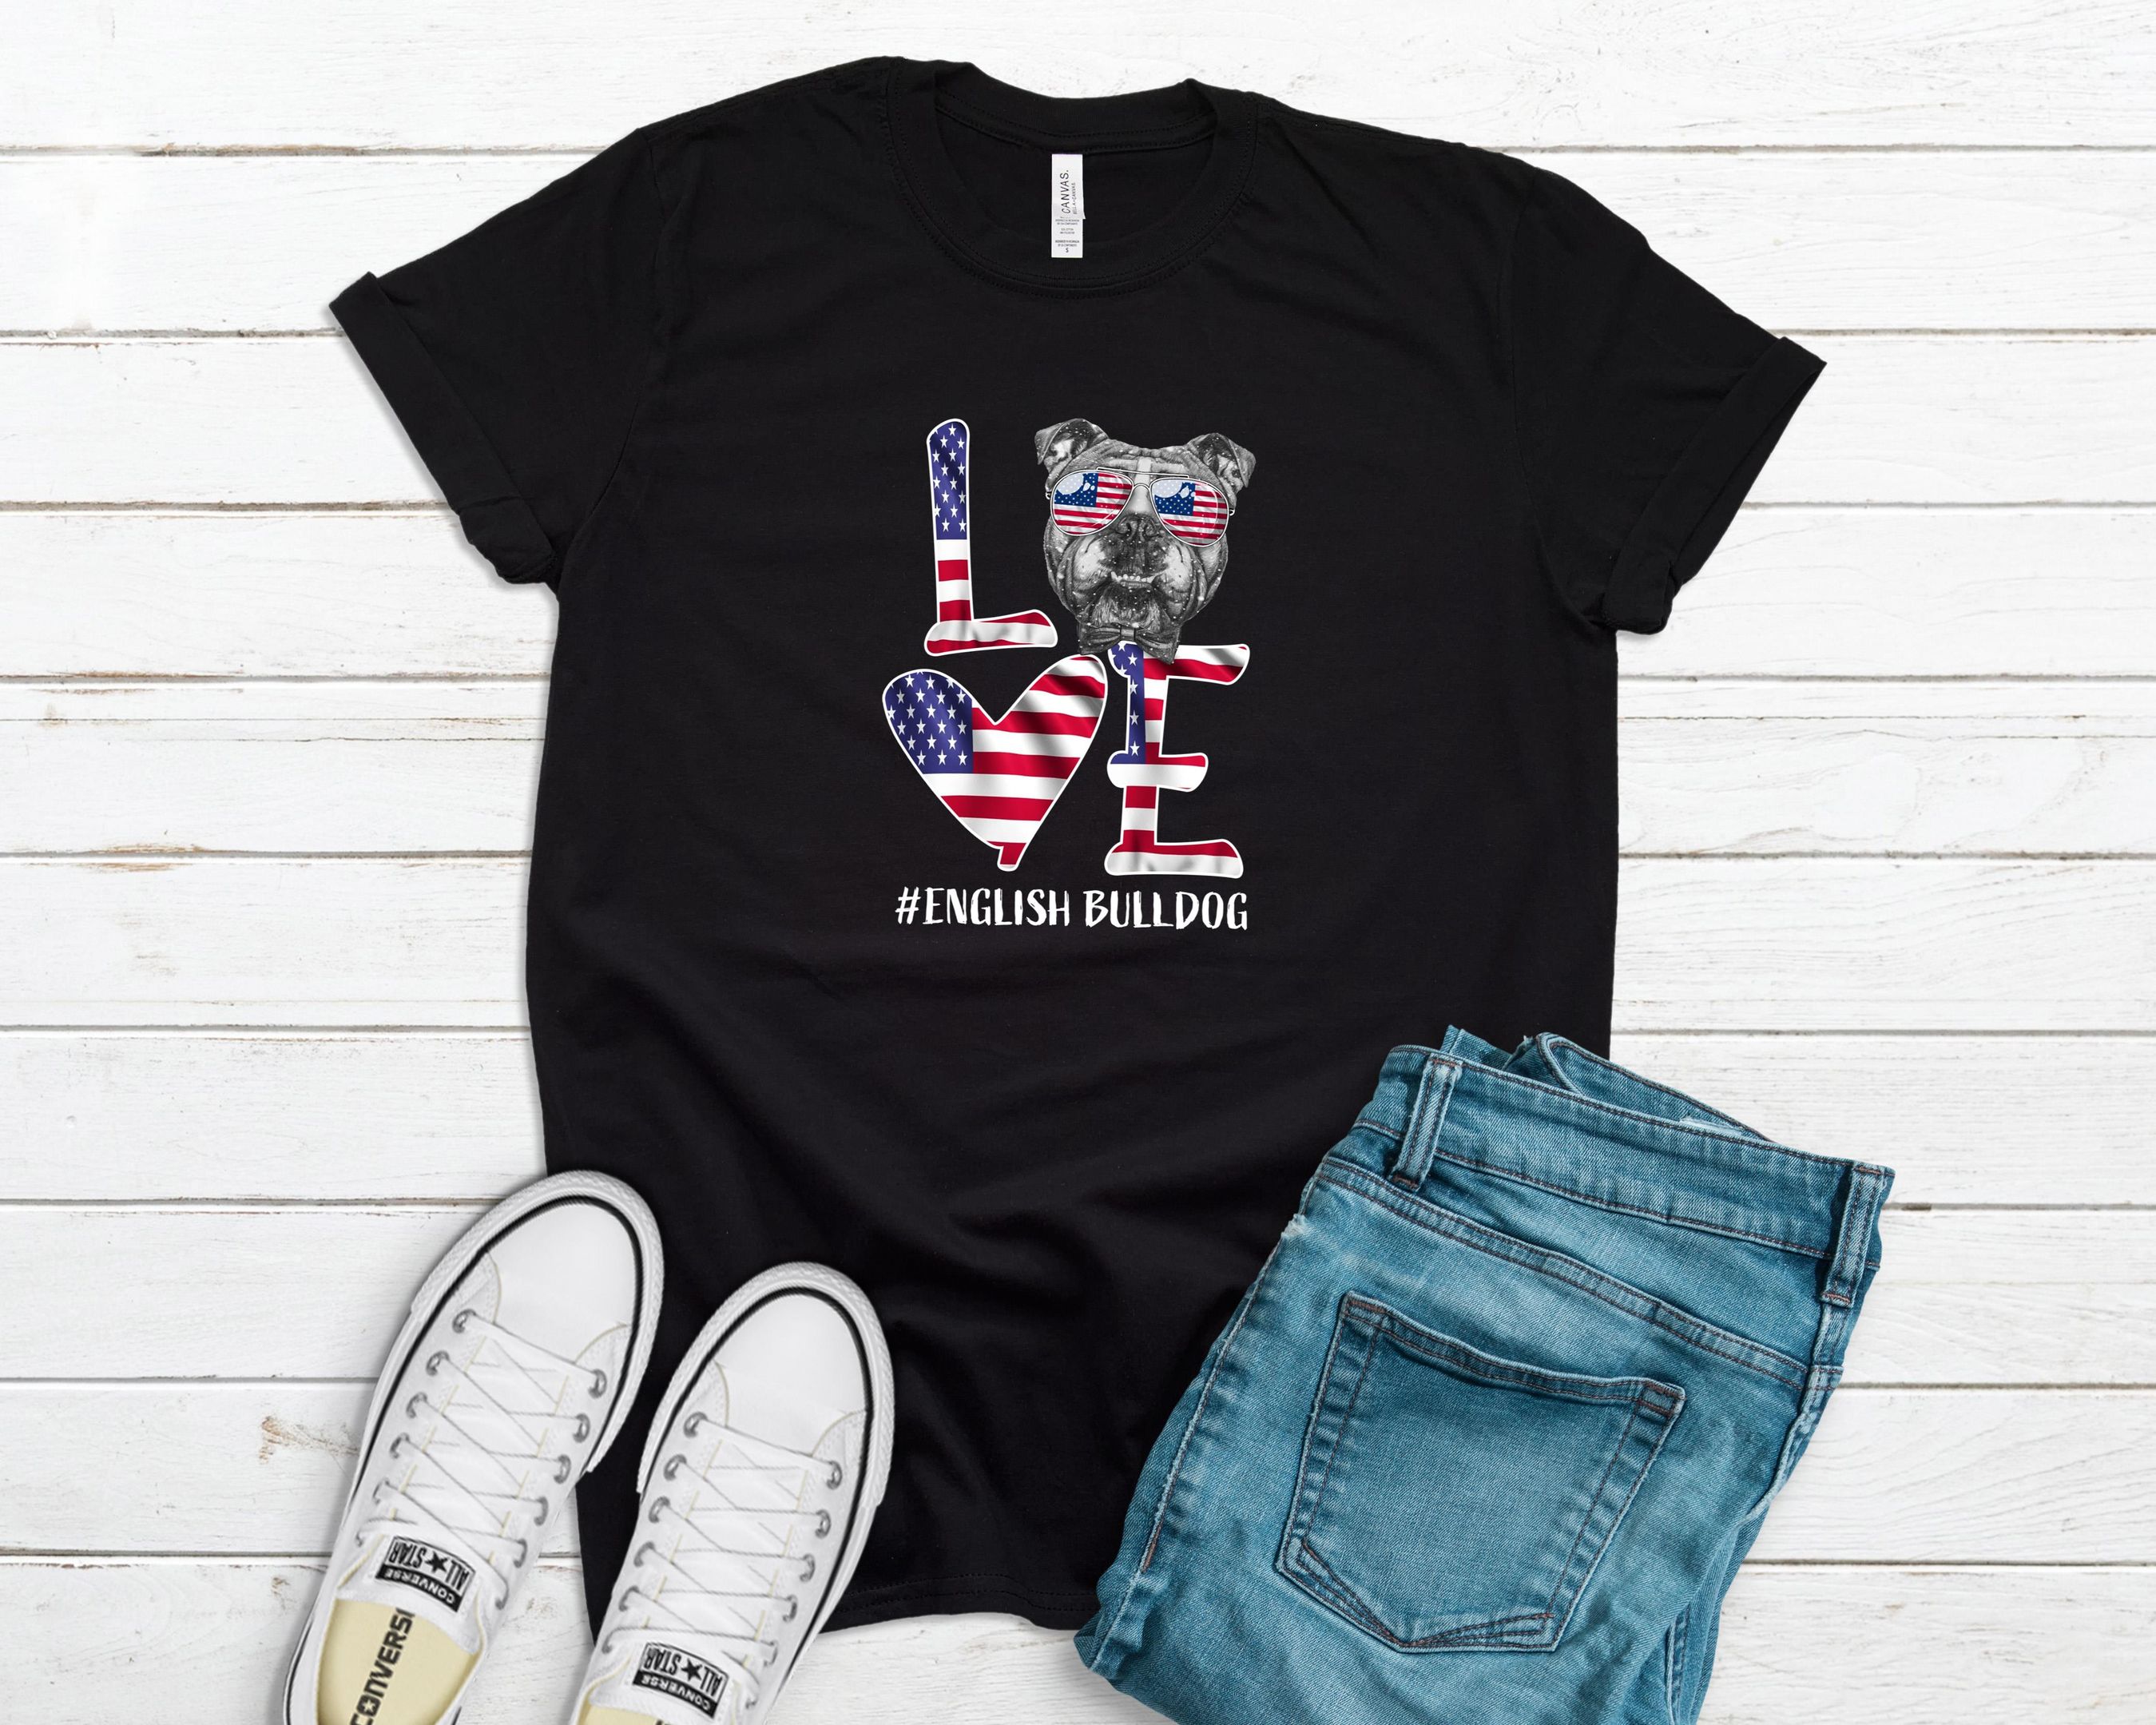 Patriotic English Pulldog Shirt, American Flag Love Tshirt, 4th of July Shirt, Independence Day Shirt, English Pulldog Tee